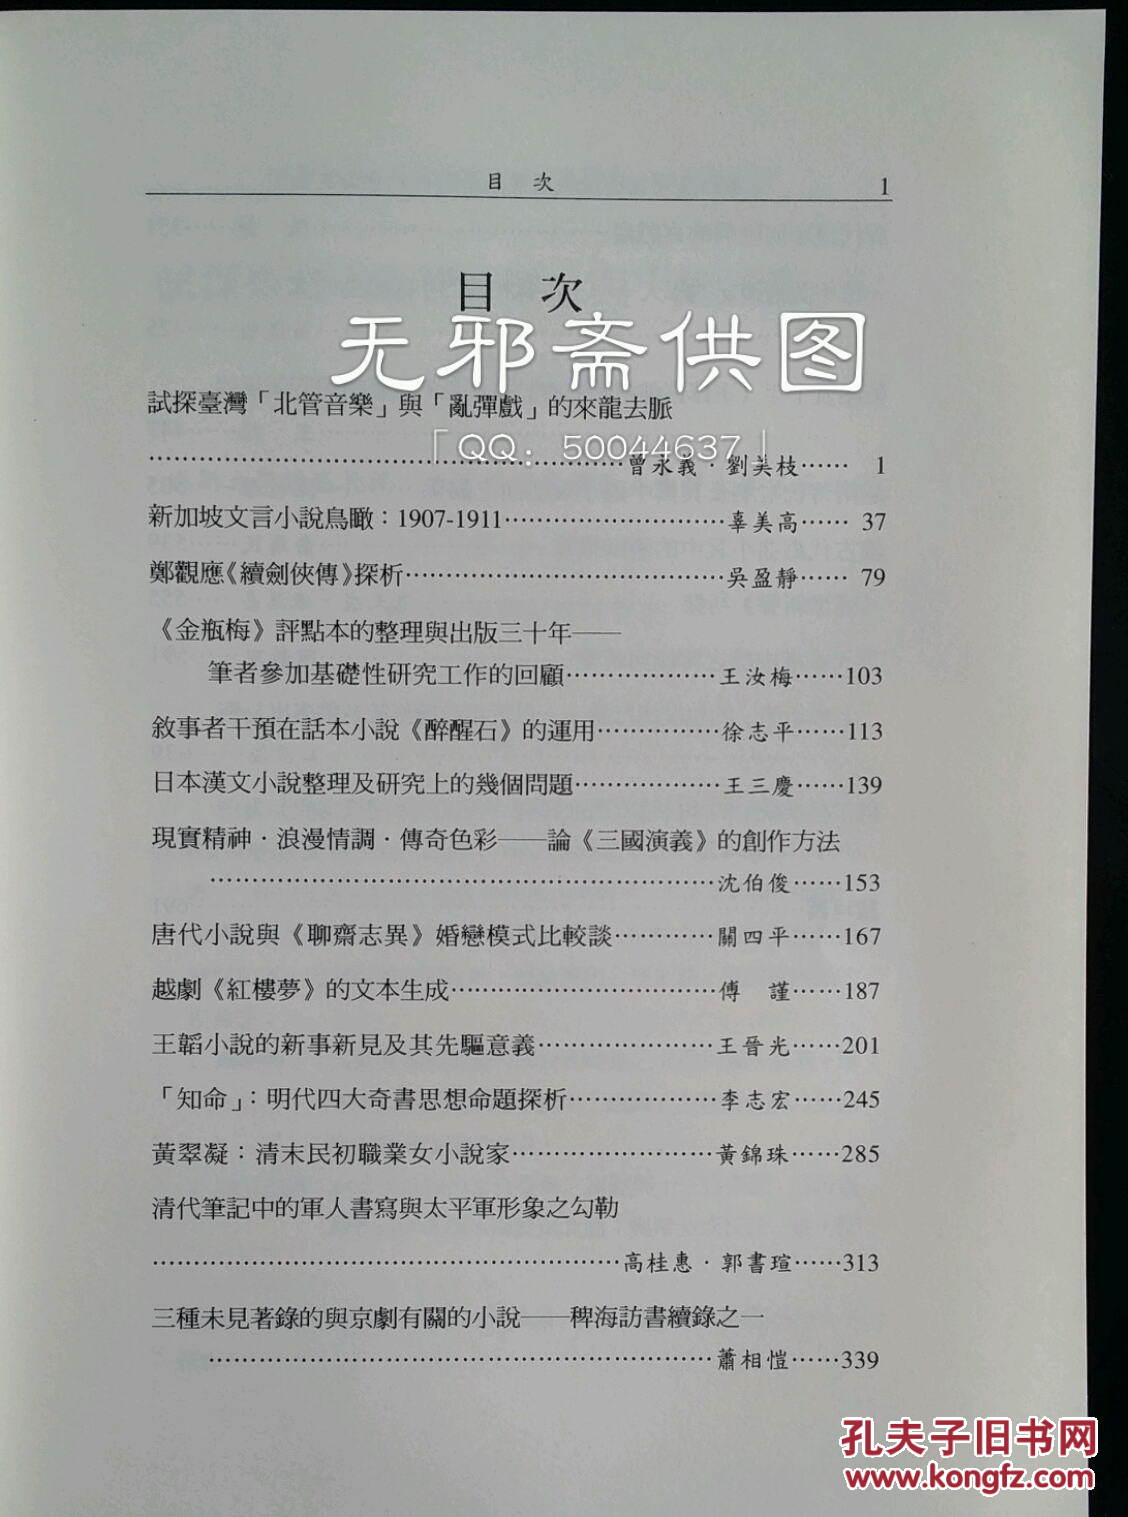 第四界中国小说戏曲国际学术研讨会论文集